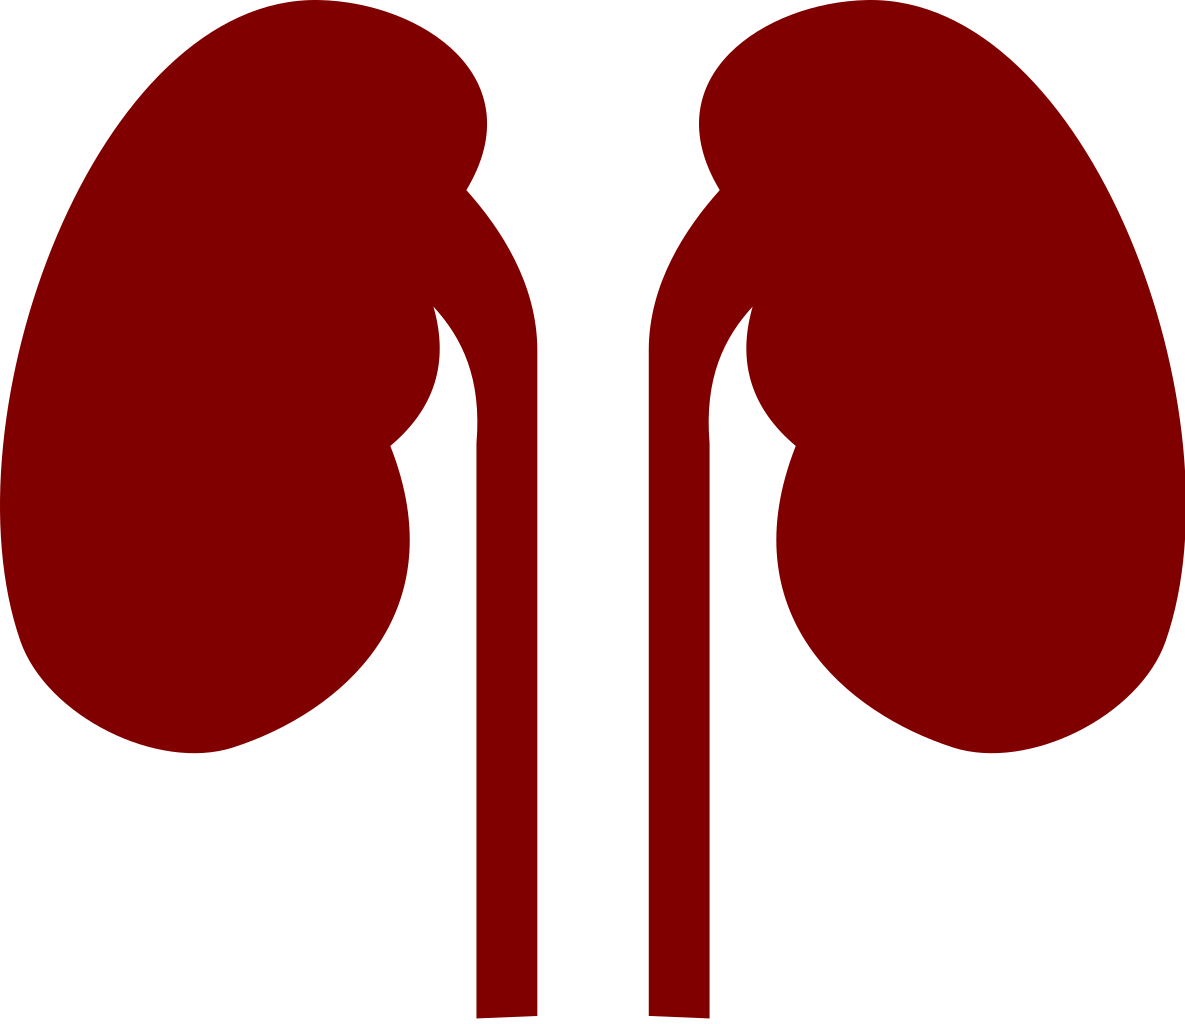 Kidney marathi